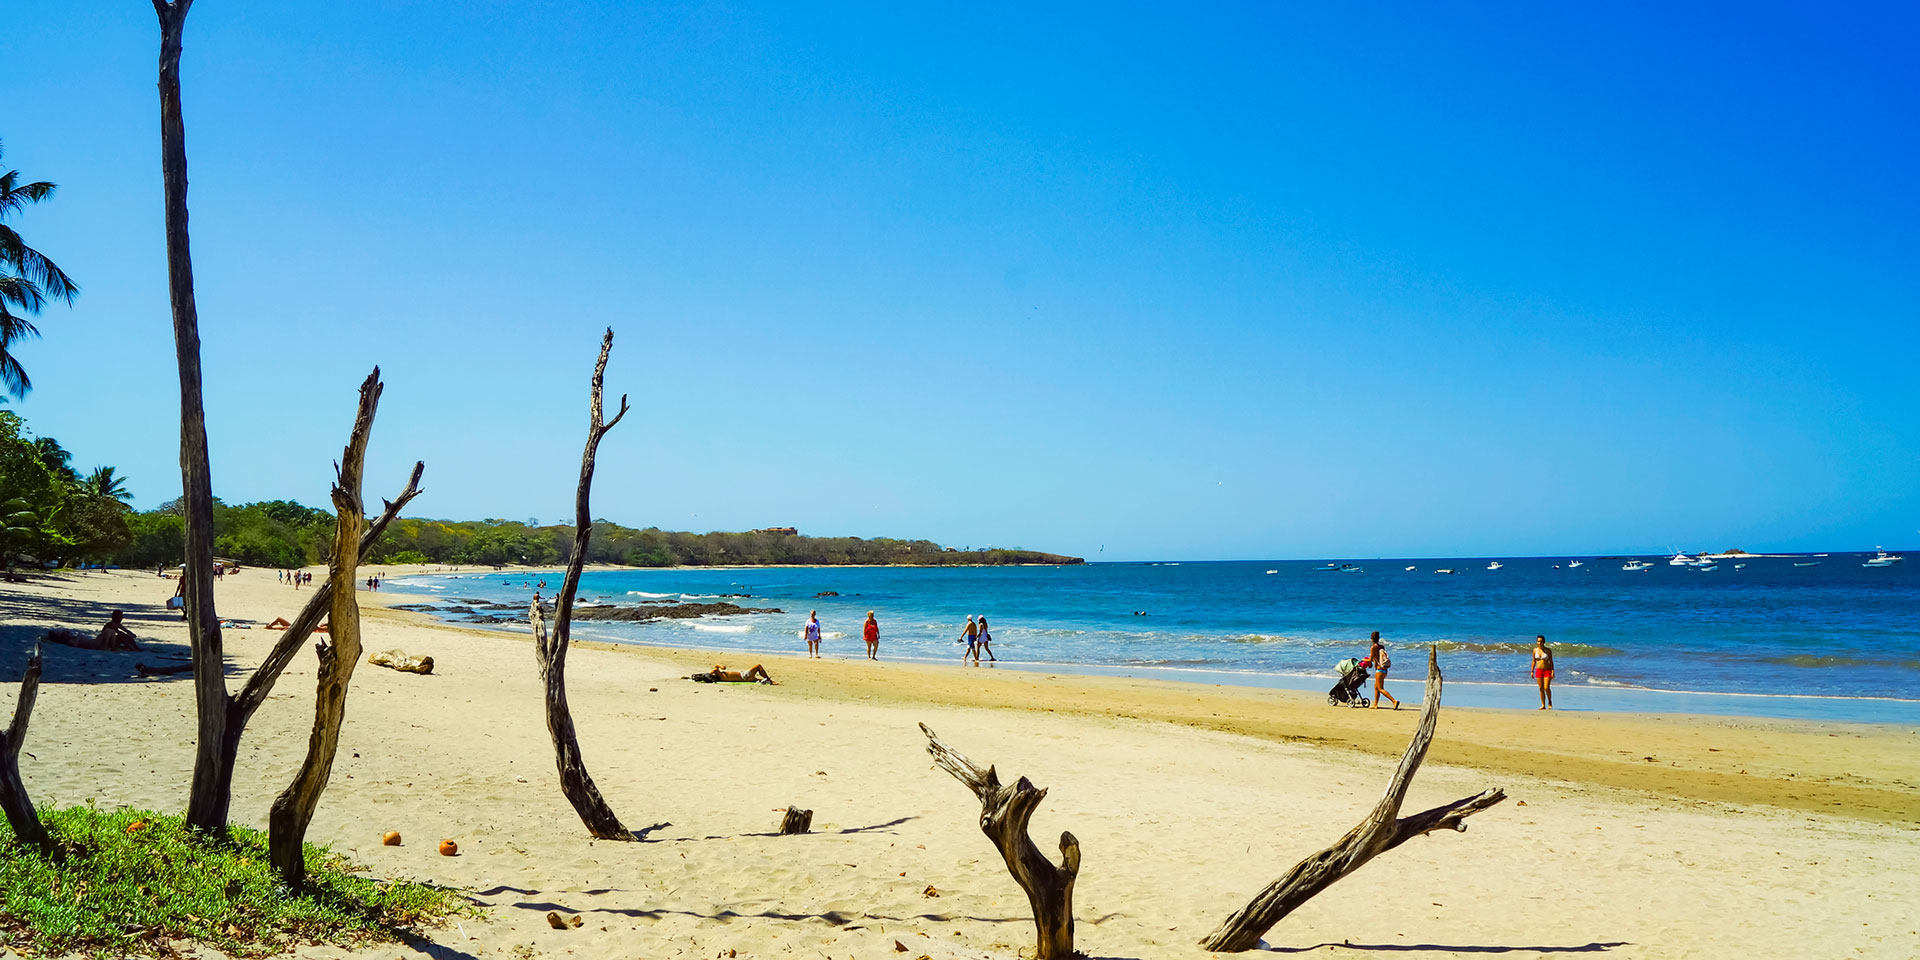 Orilla de la playa Tamarindo, perfecta para caminar con tu pareja o descansar bajo el sol